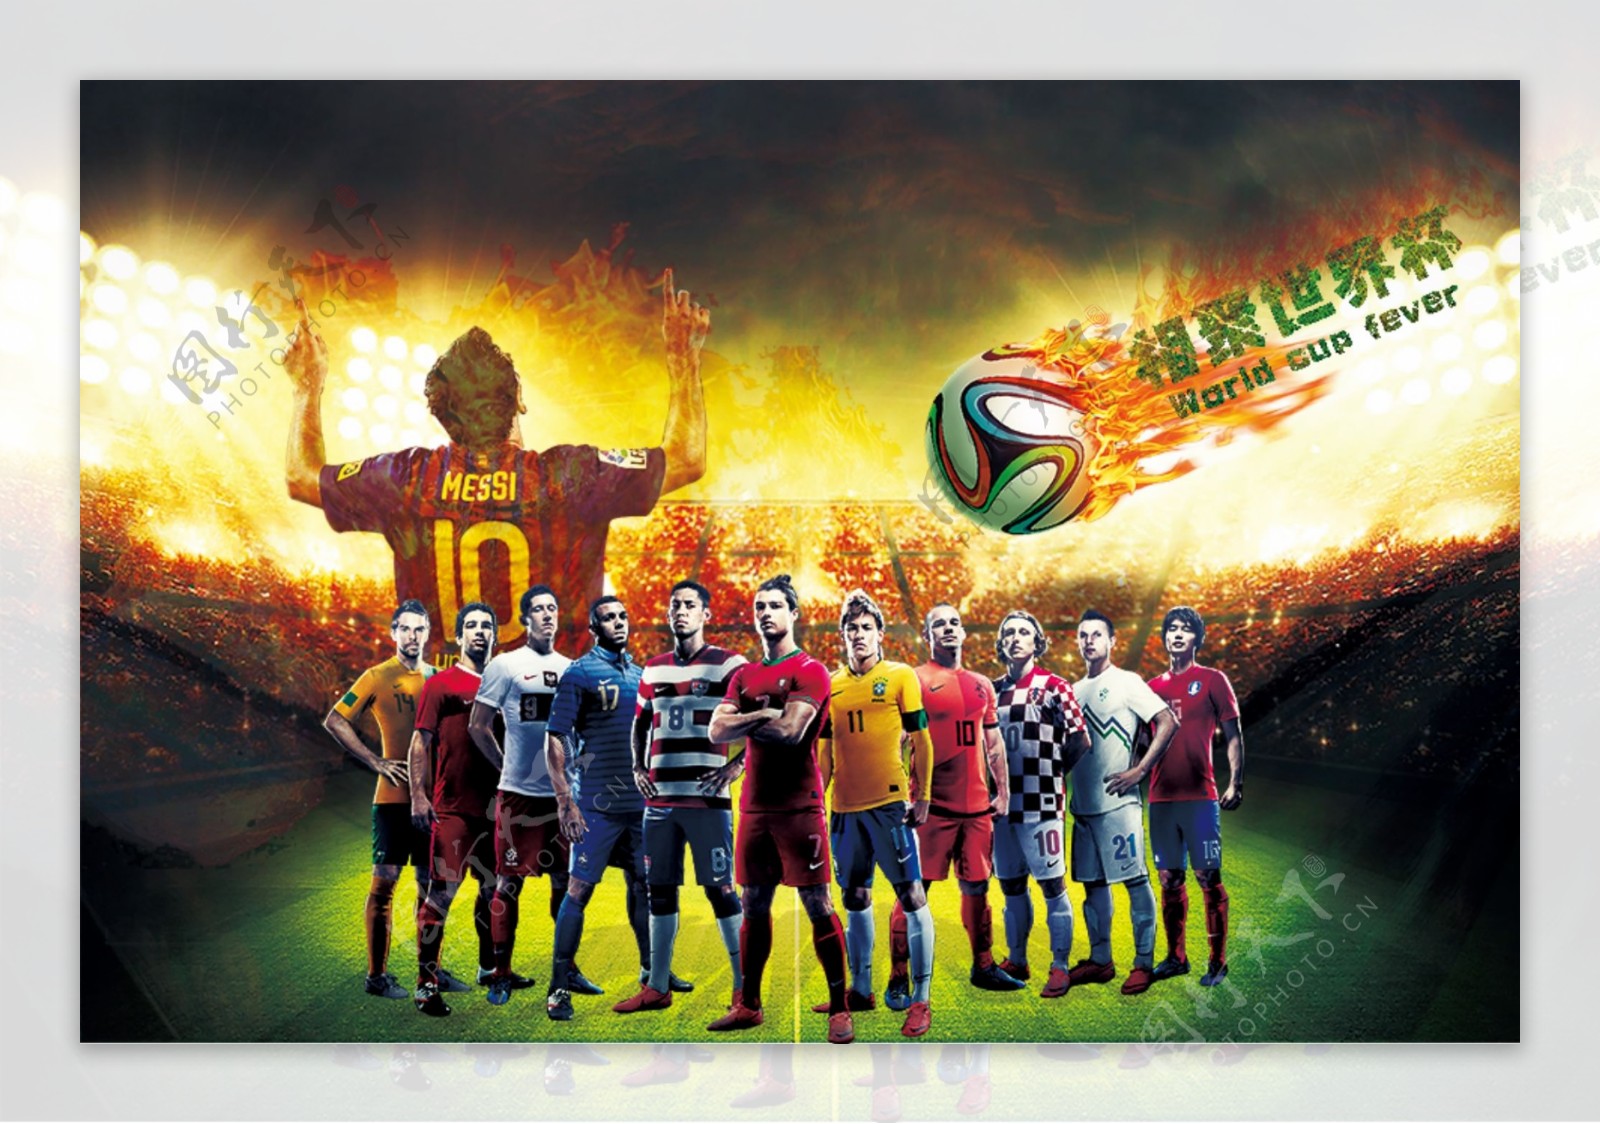 世界杯海报